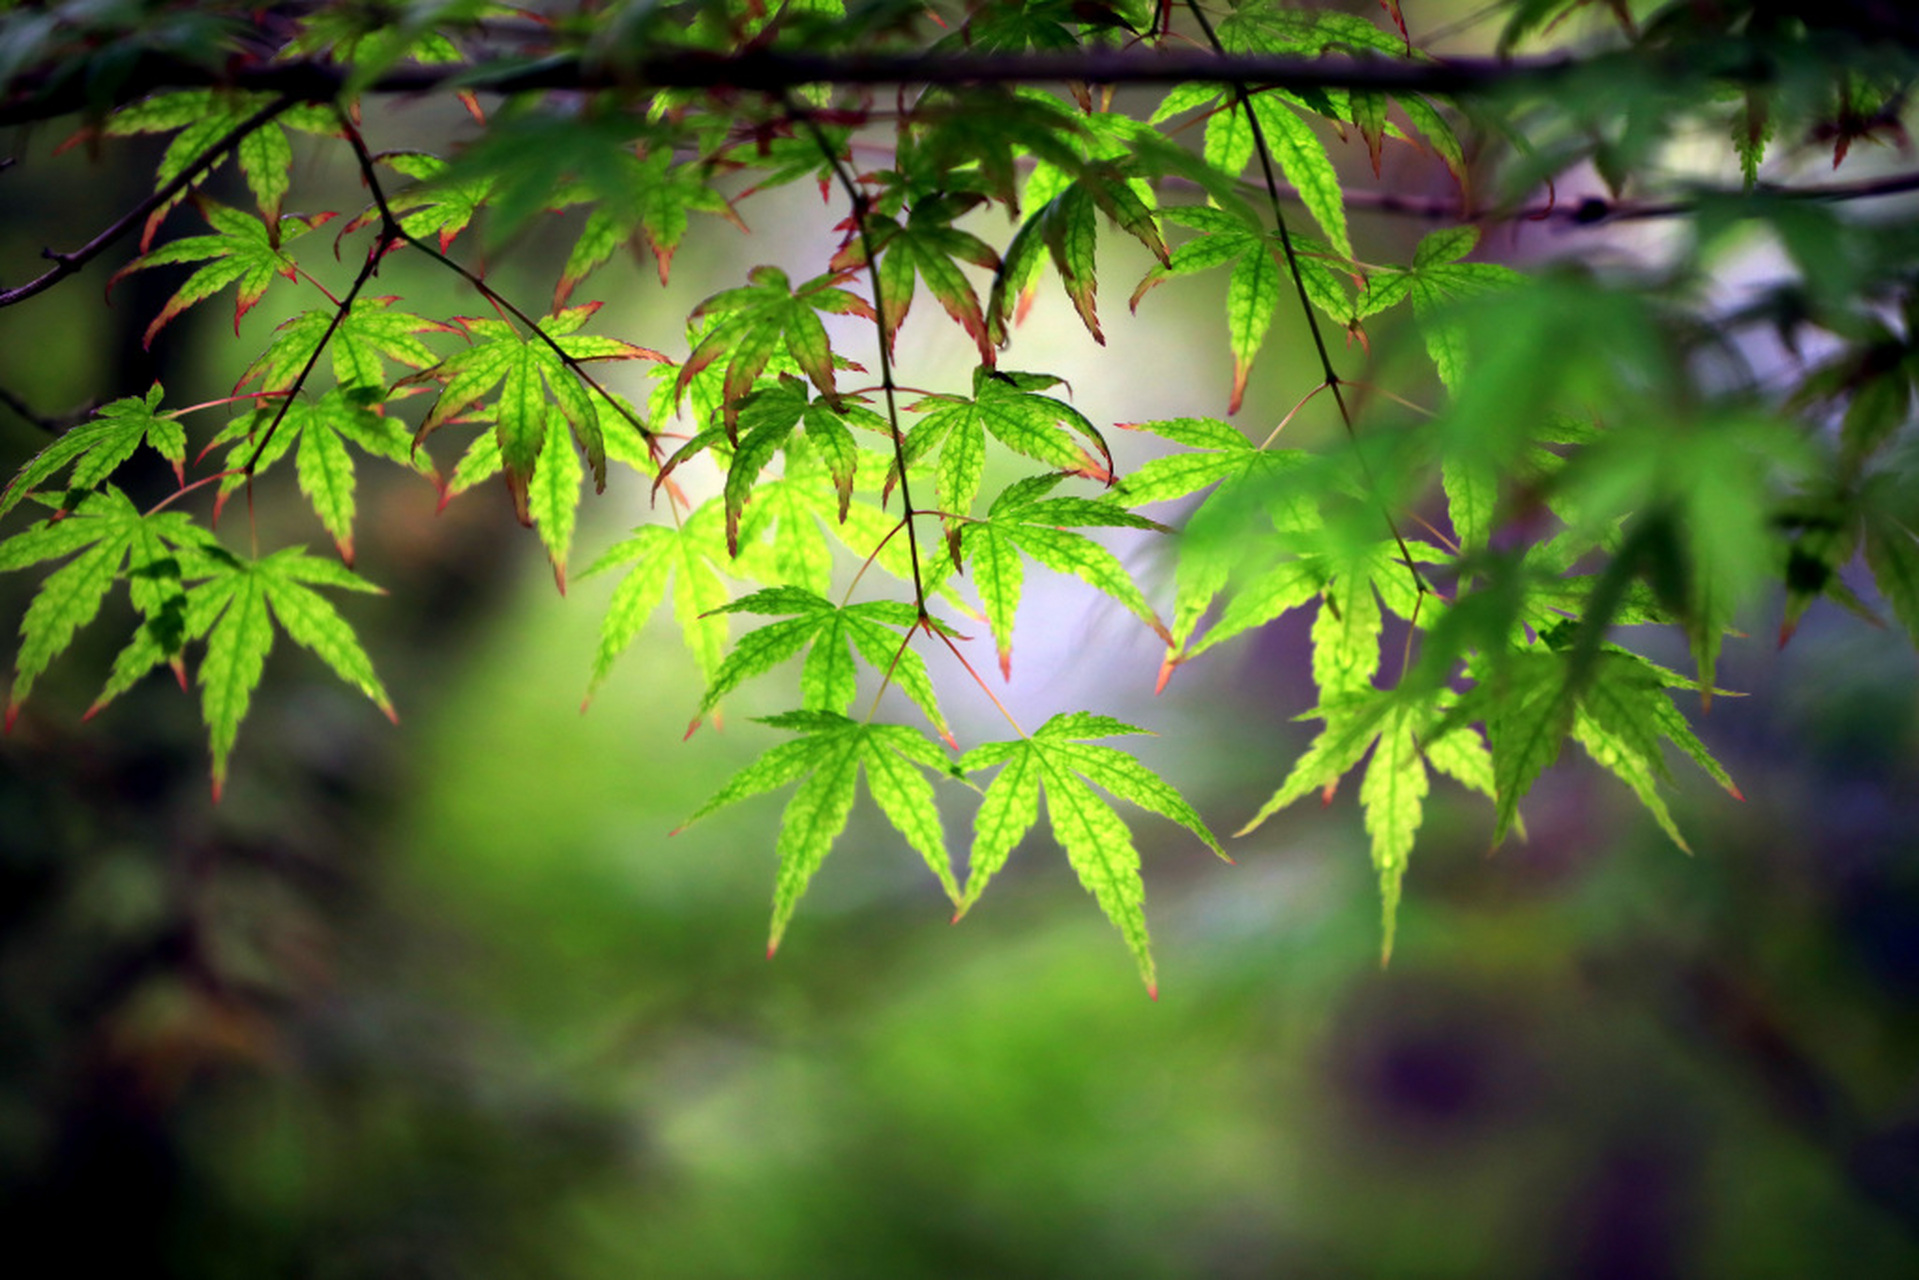 江苏淮安,成片的鸡爪槭开始长出嫩绿的新叶,放眼望去,满目绿意,尽显